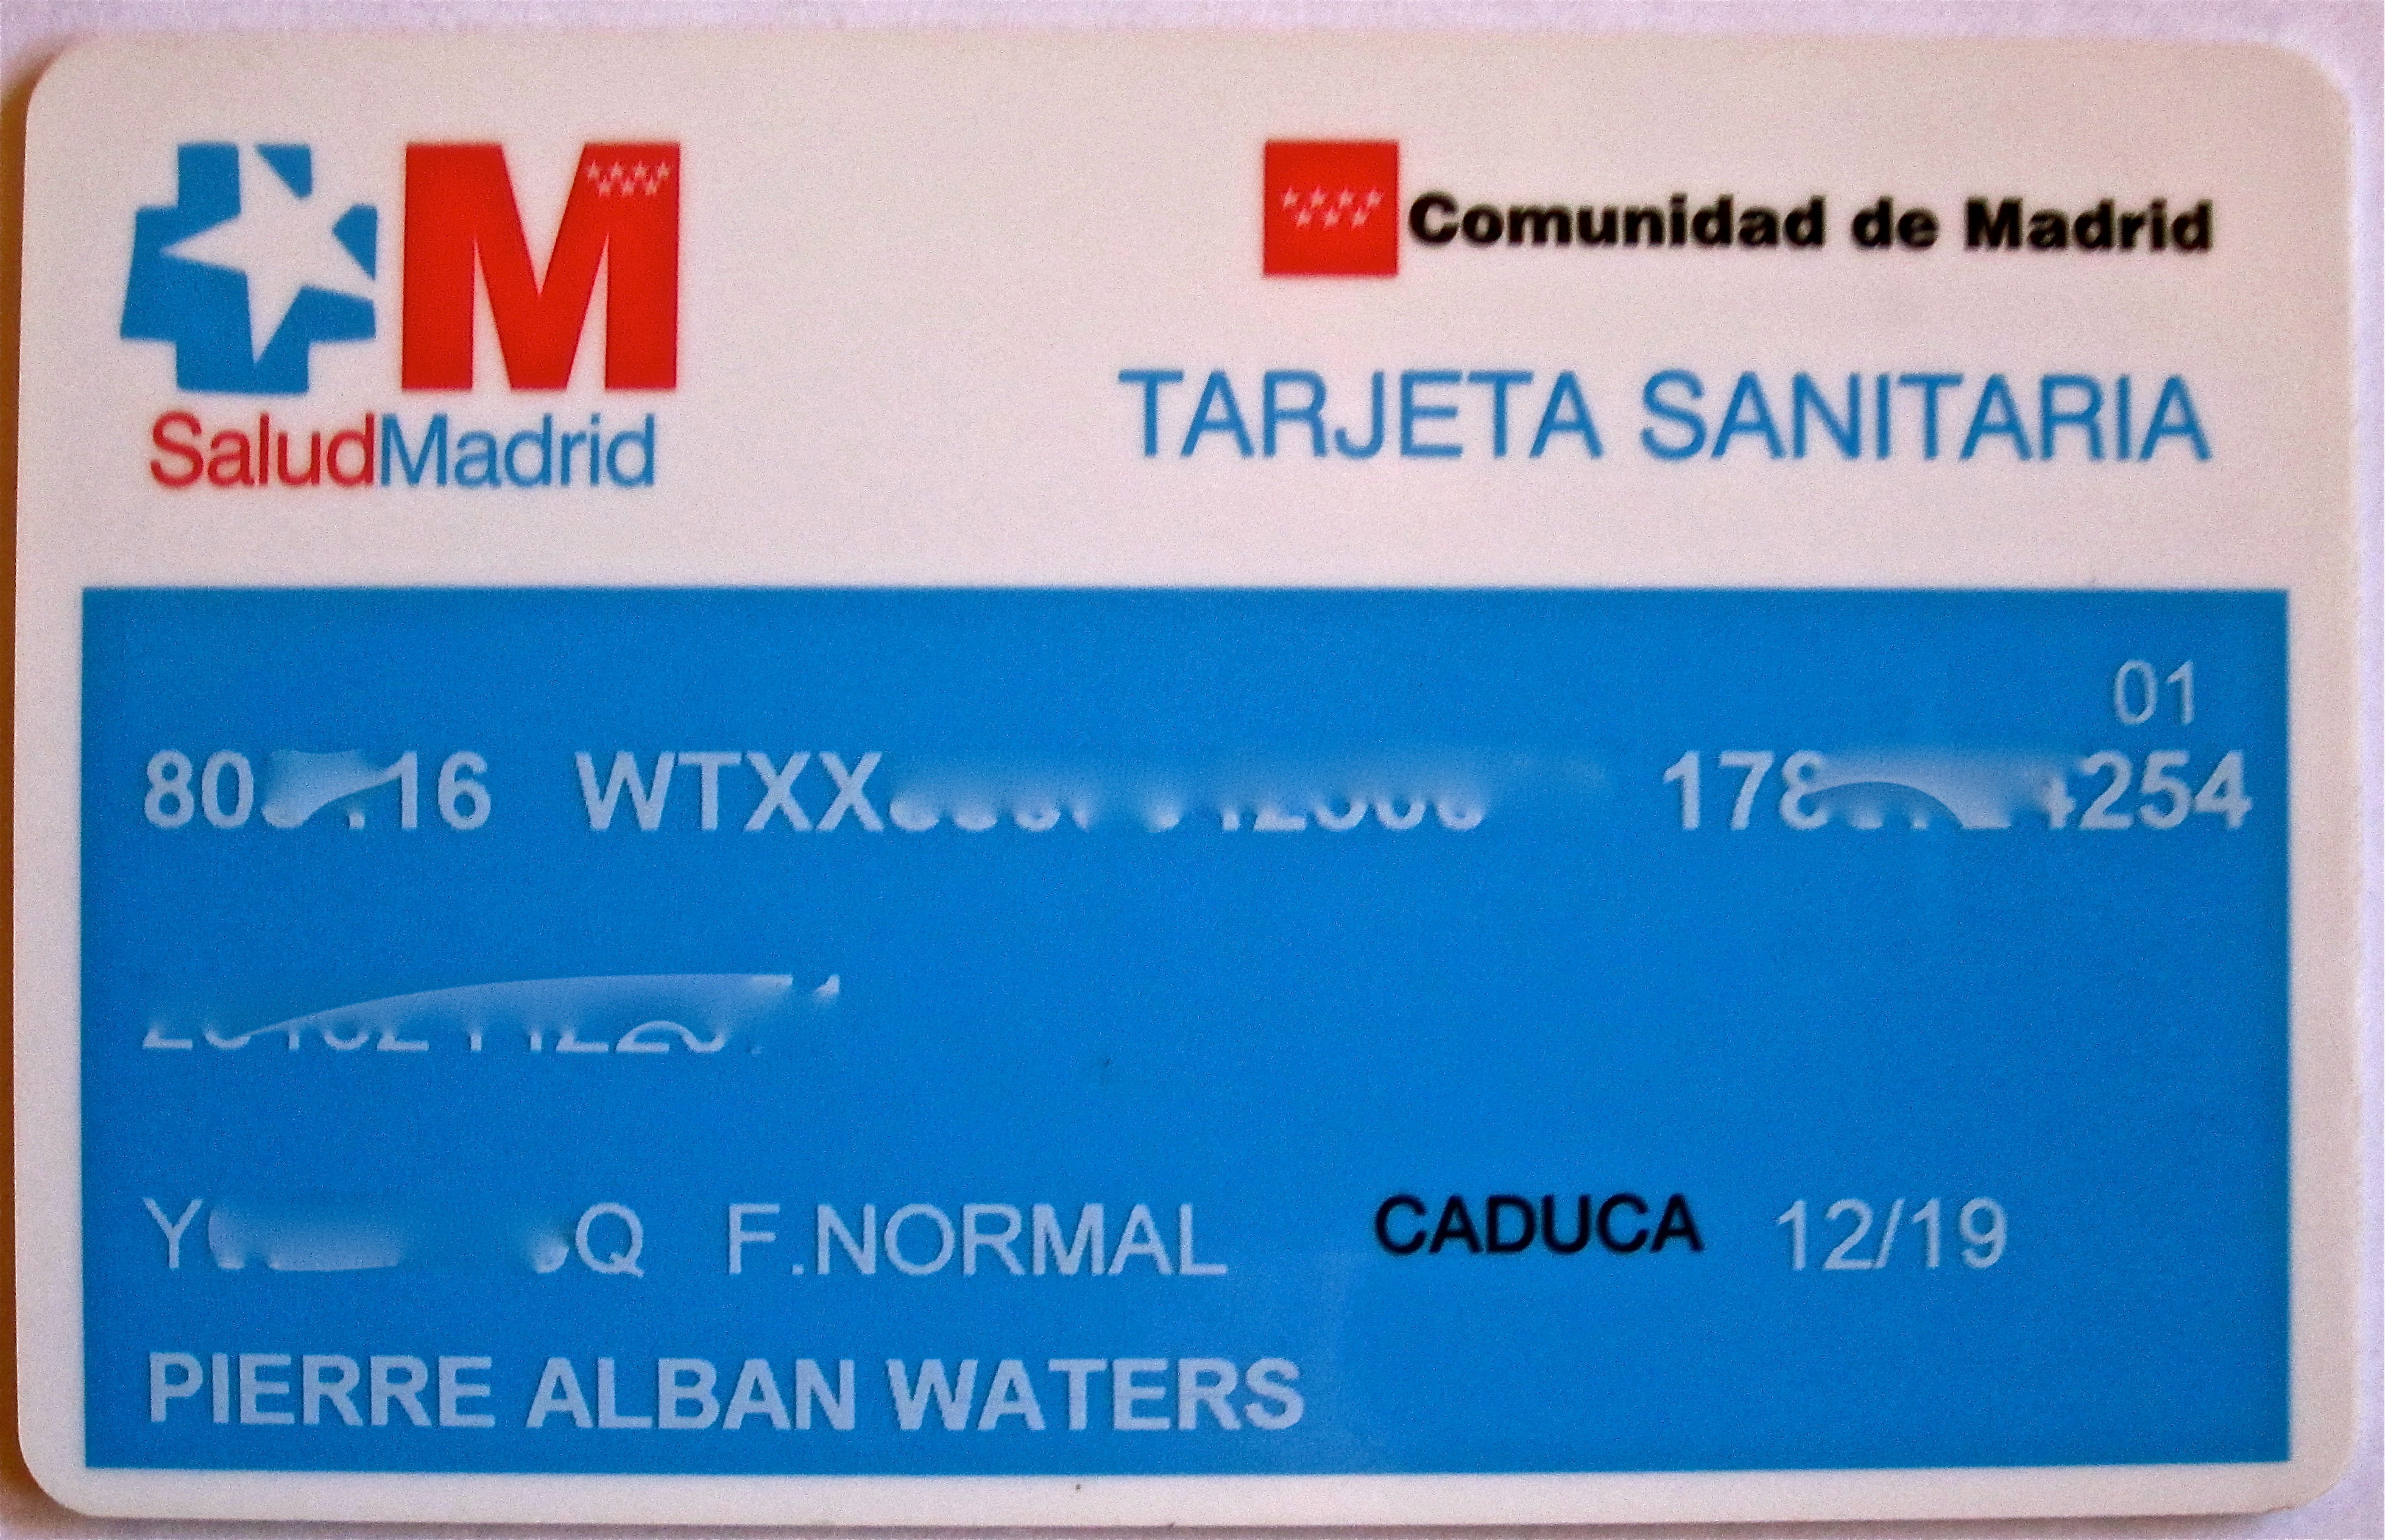 My "Tarjeta Sanitaria", or Health Card